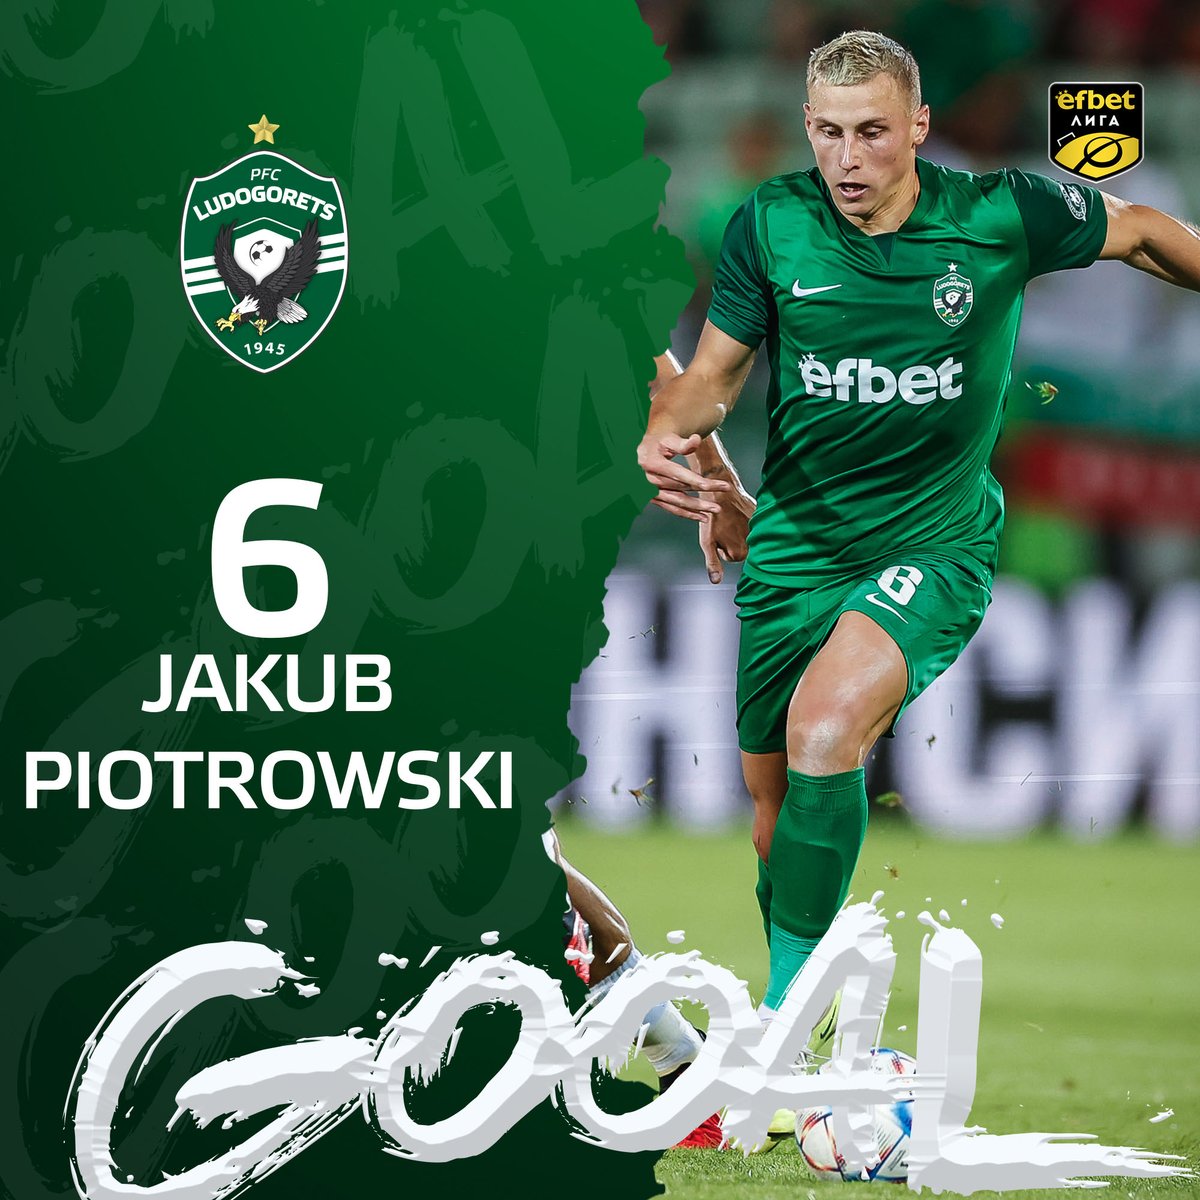 ⚽🏃‍ Jakub Piotrowski scores for 2:0 against Arda (Kardzhali) #ludogorets #arda #ludogoretsarda